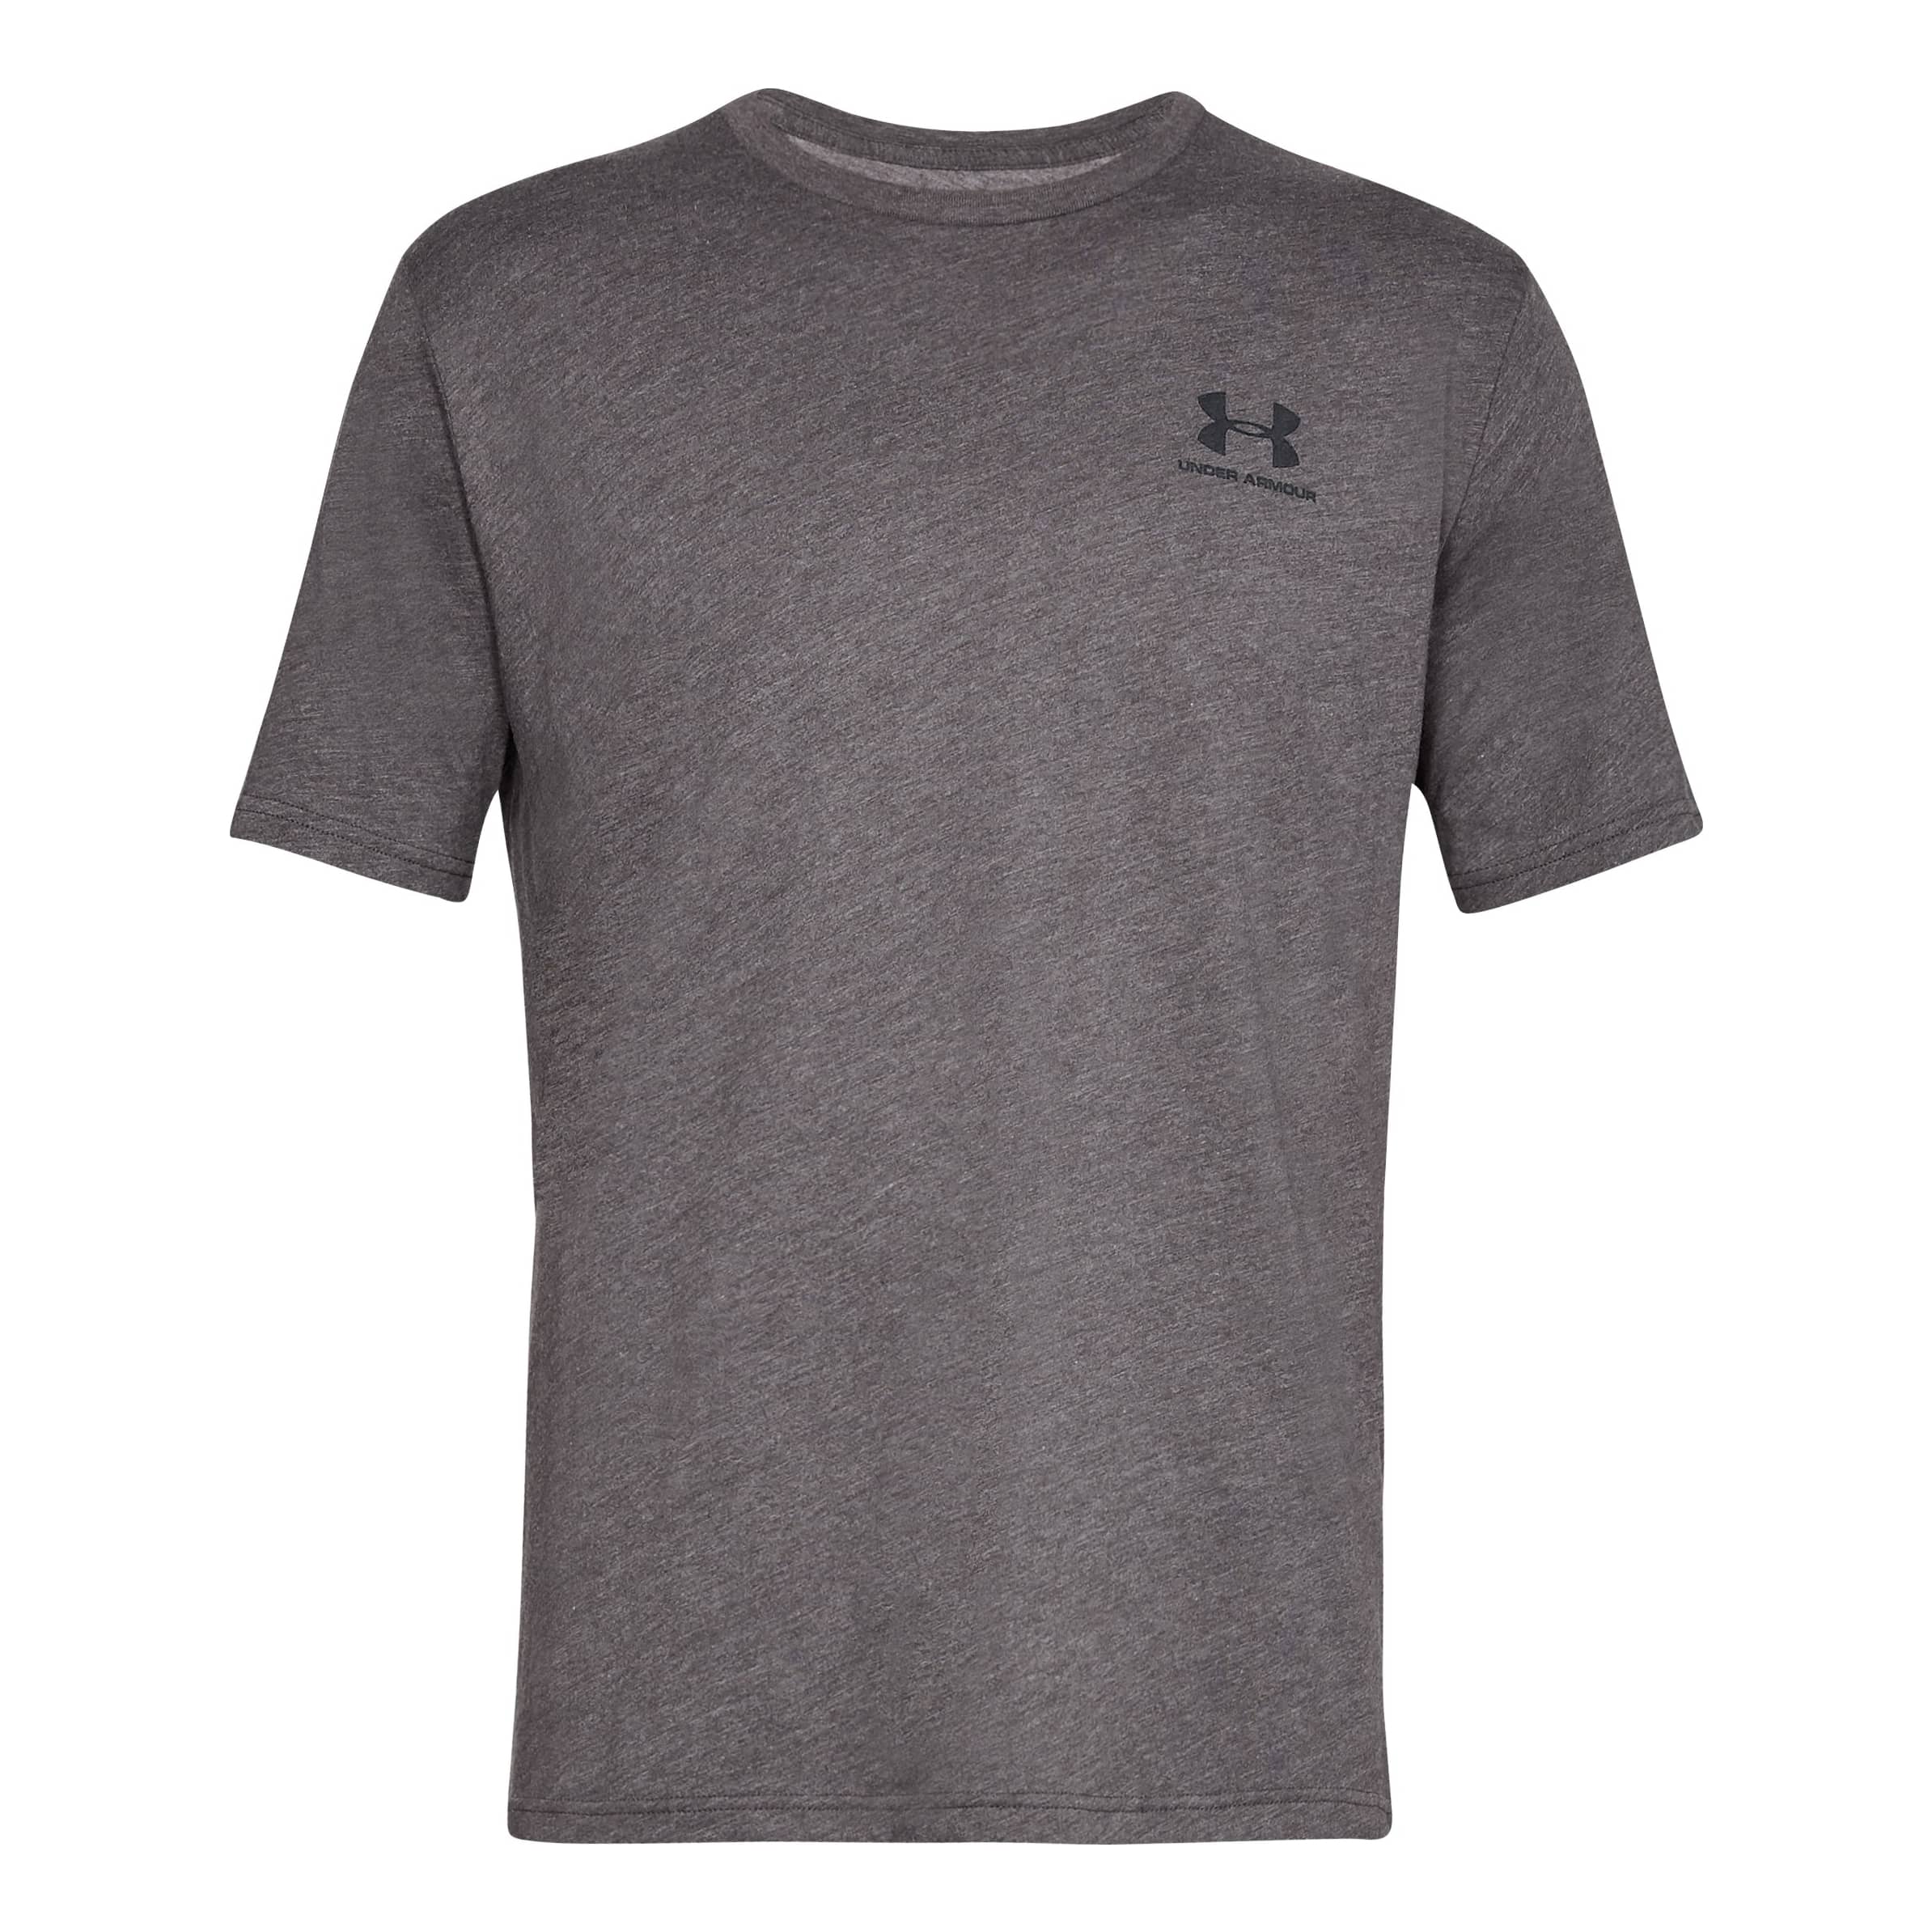 Under Armour Men's Tech 2.0 Short-sleeve T-shirt Black (001)/Graphite Large